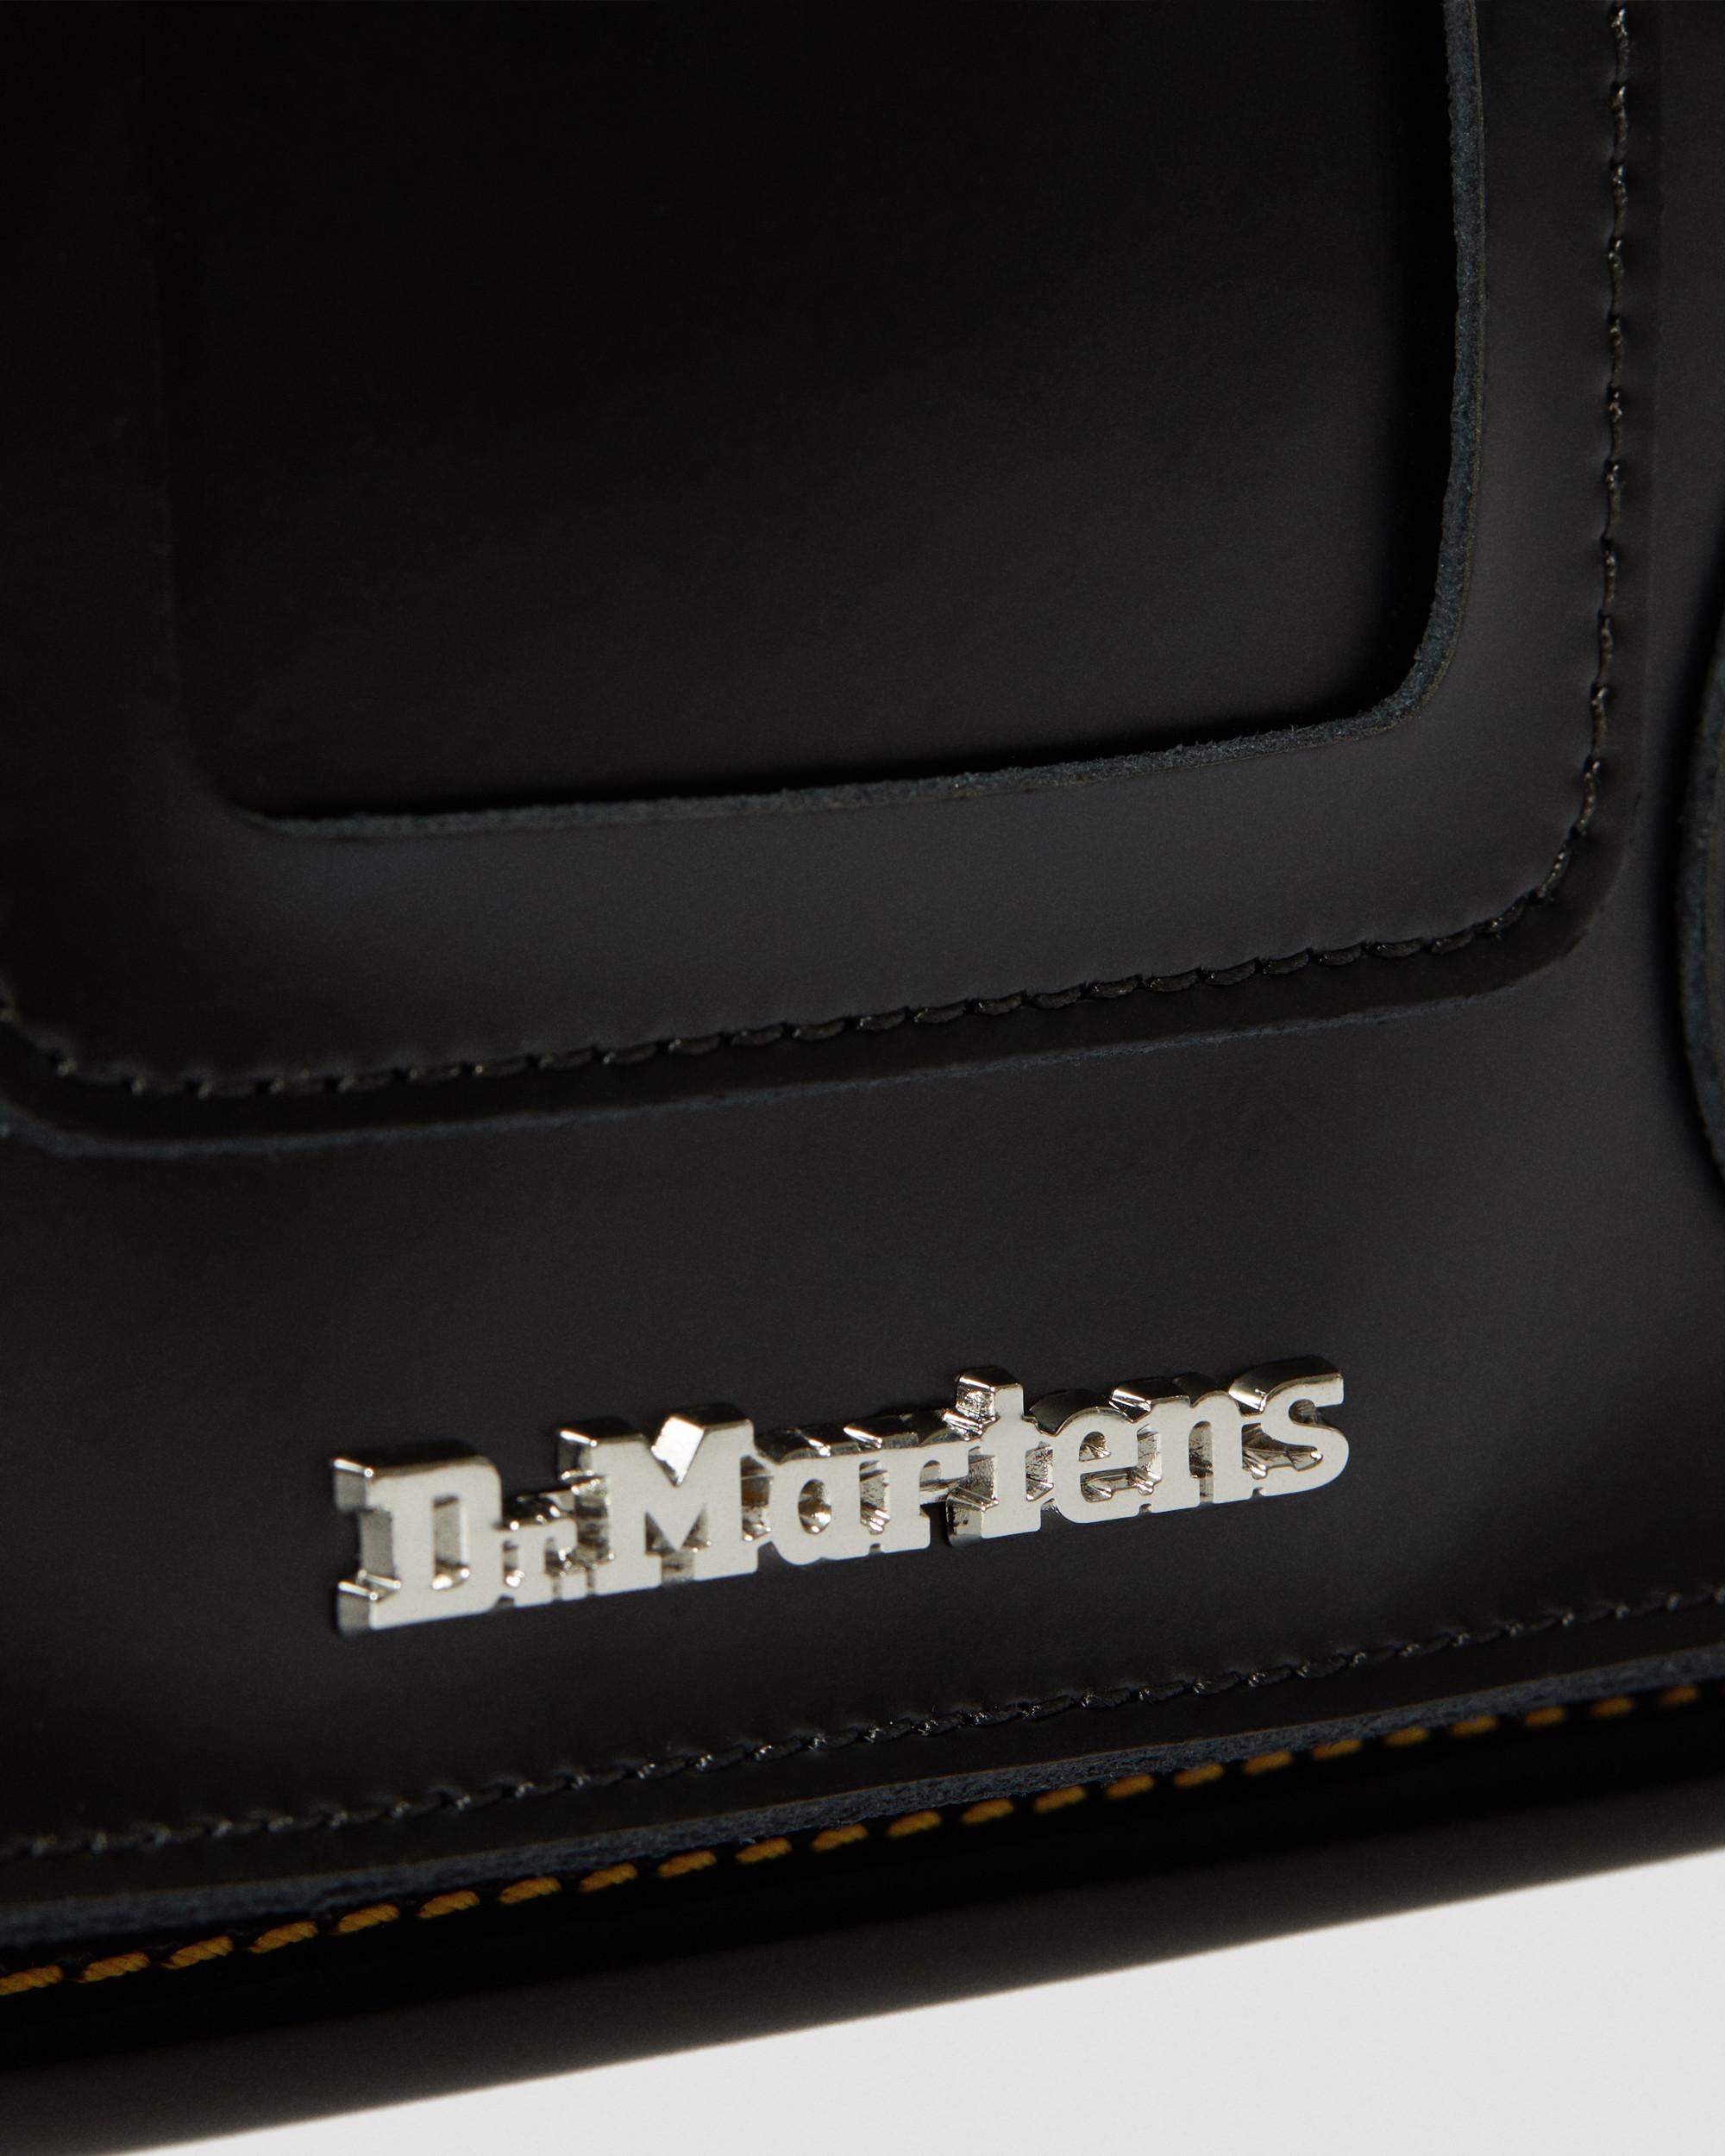 Dr. Martens, Leather & Canvas Messenger Bag in Black